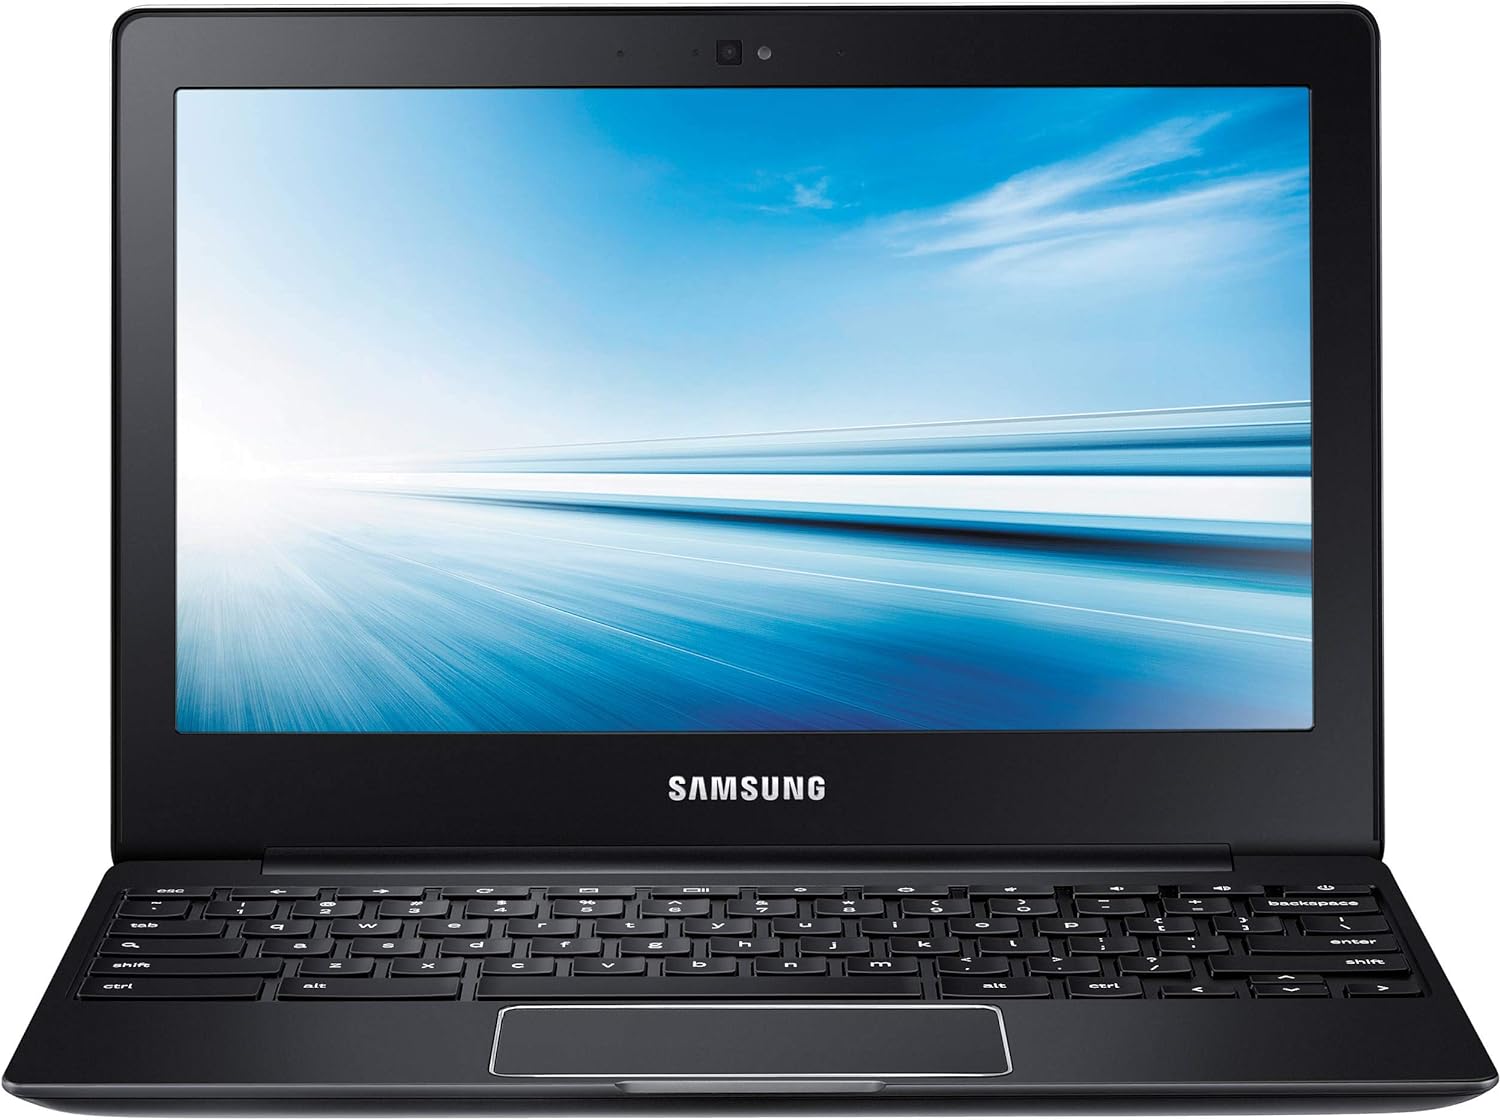 Refurbished Samsung Chromebook 2 XE503C12 Exynos 5 Octa 5420 4GB RAM 16GB eMMC 11.6" - Good